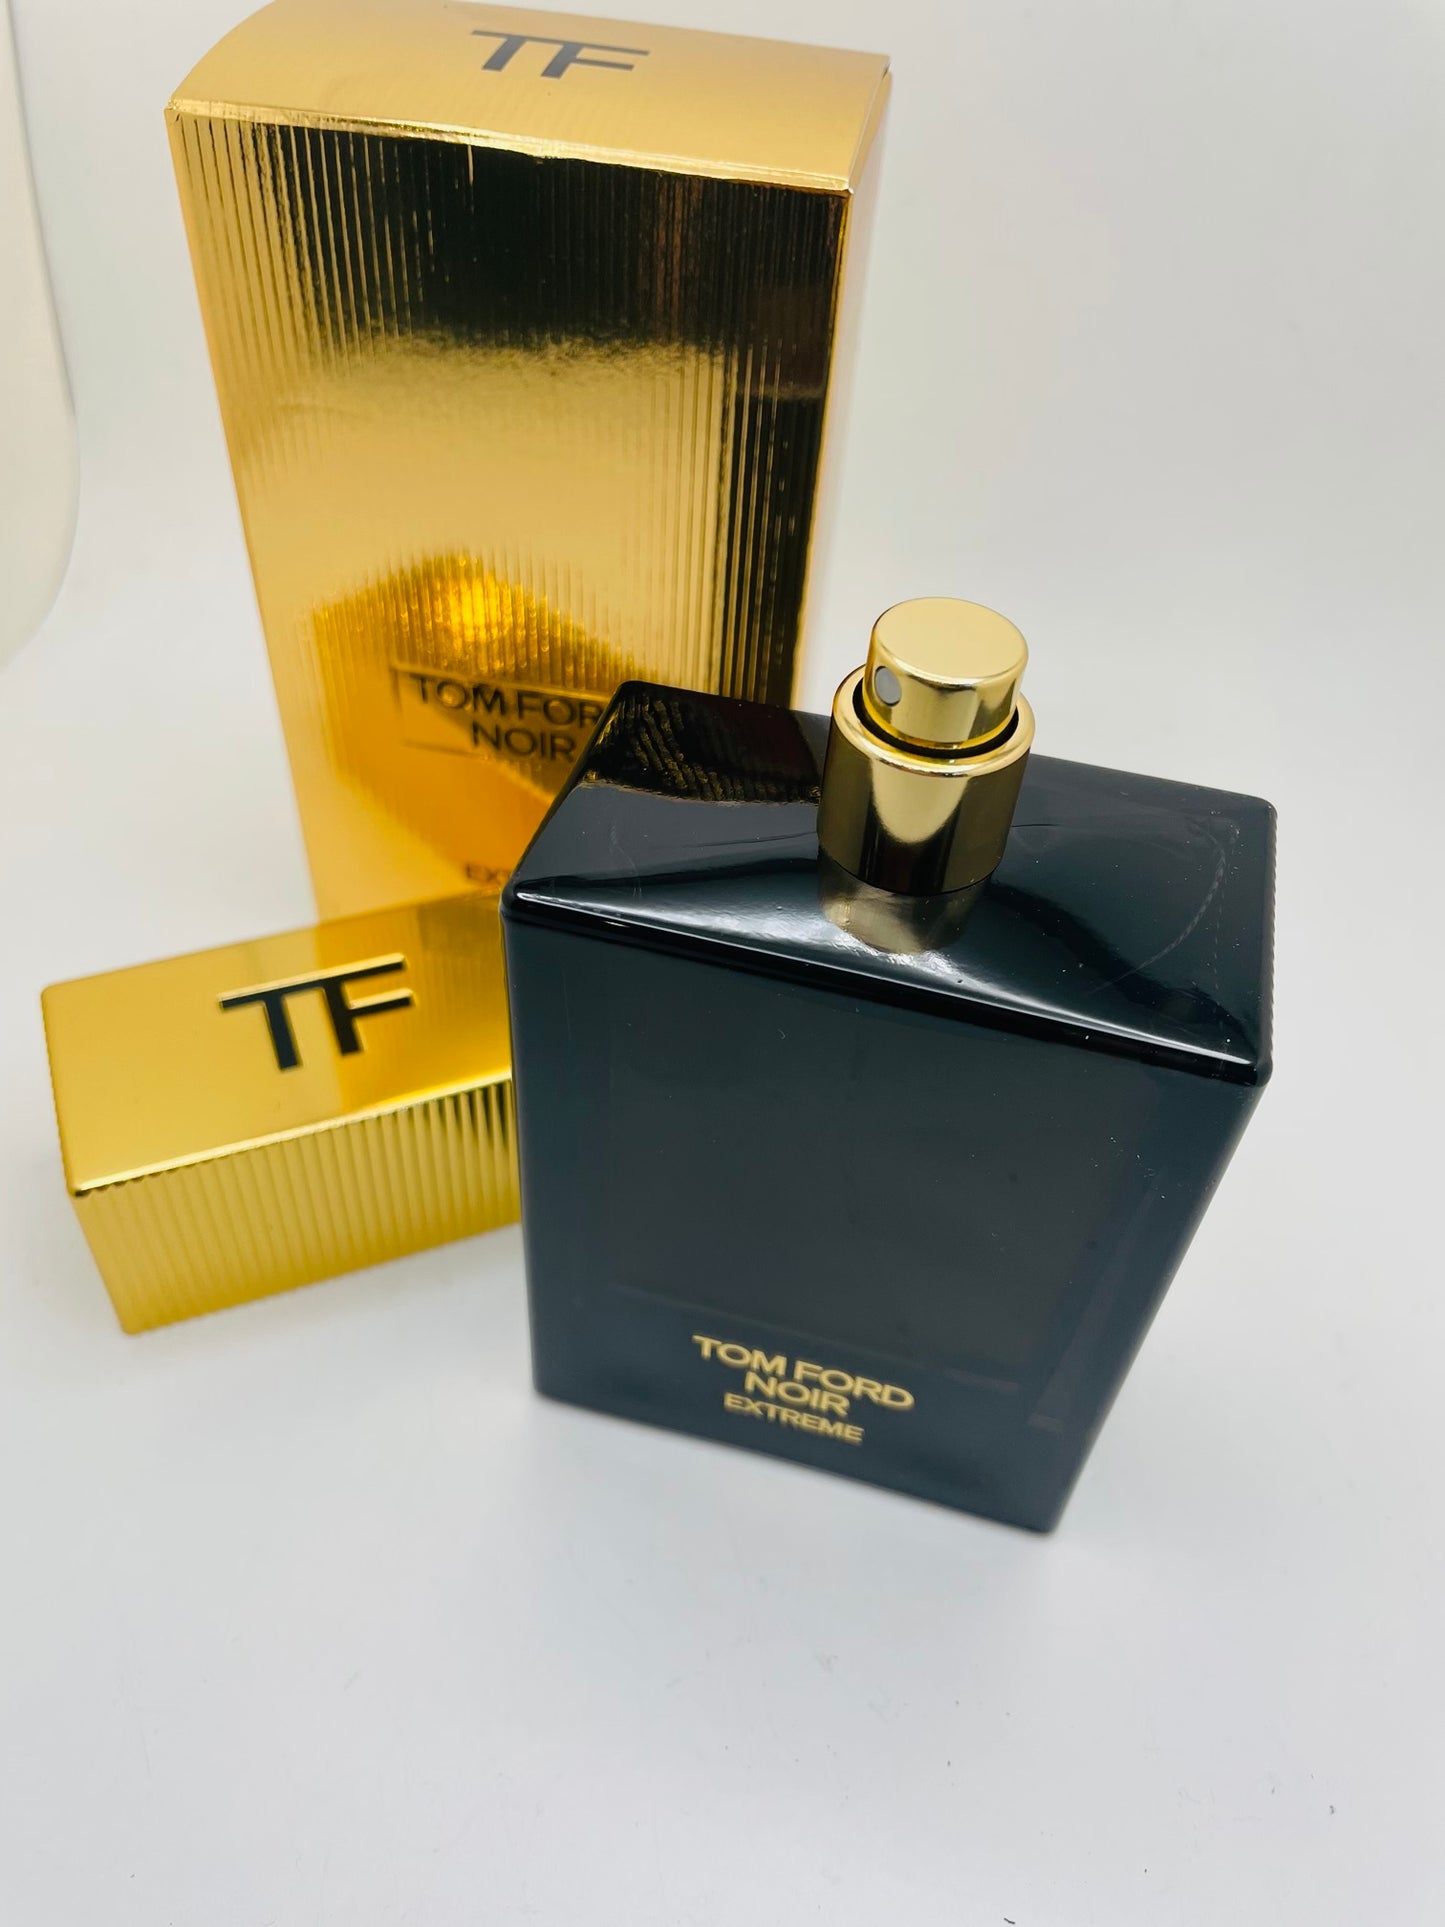 Tom Ford noir extreme eau de parfum 100 ml